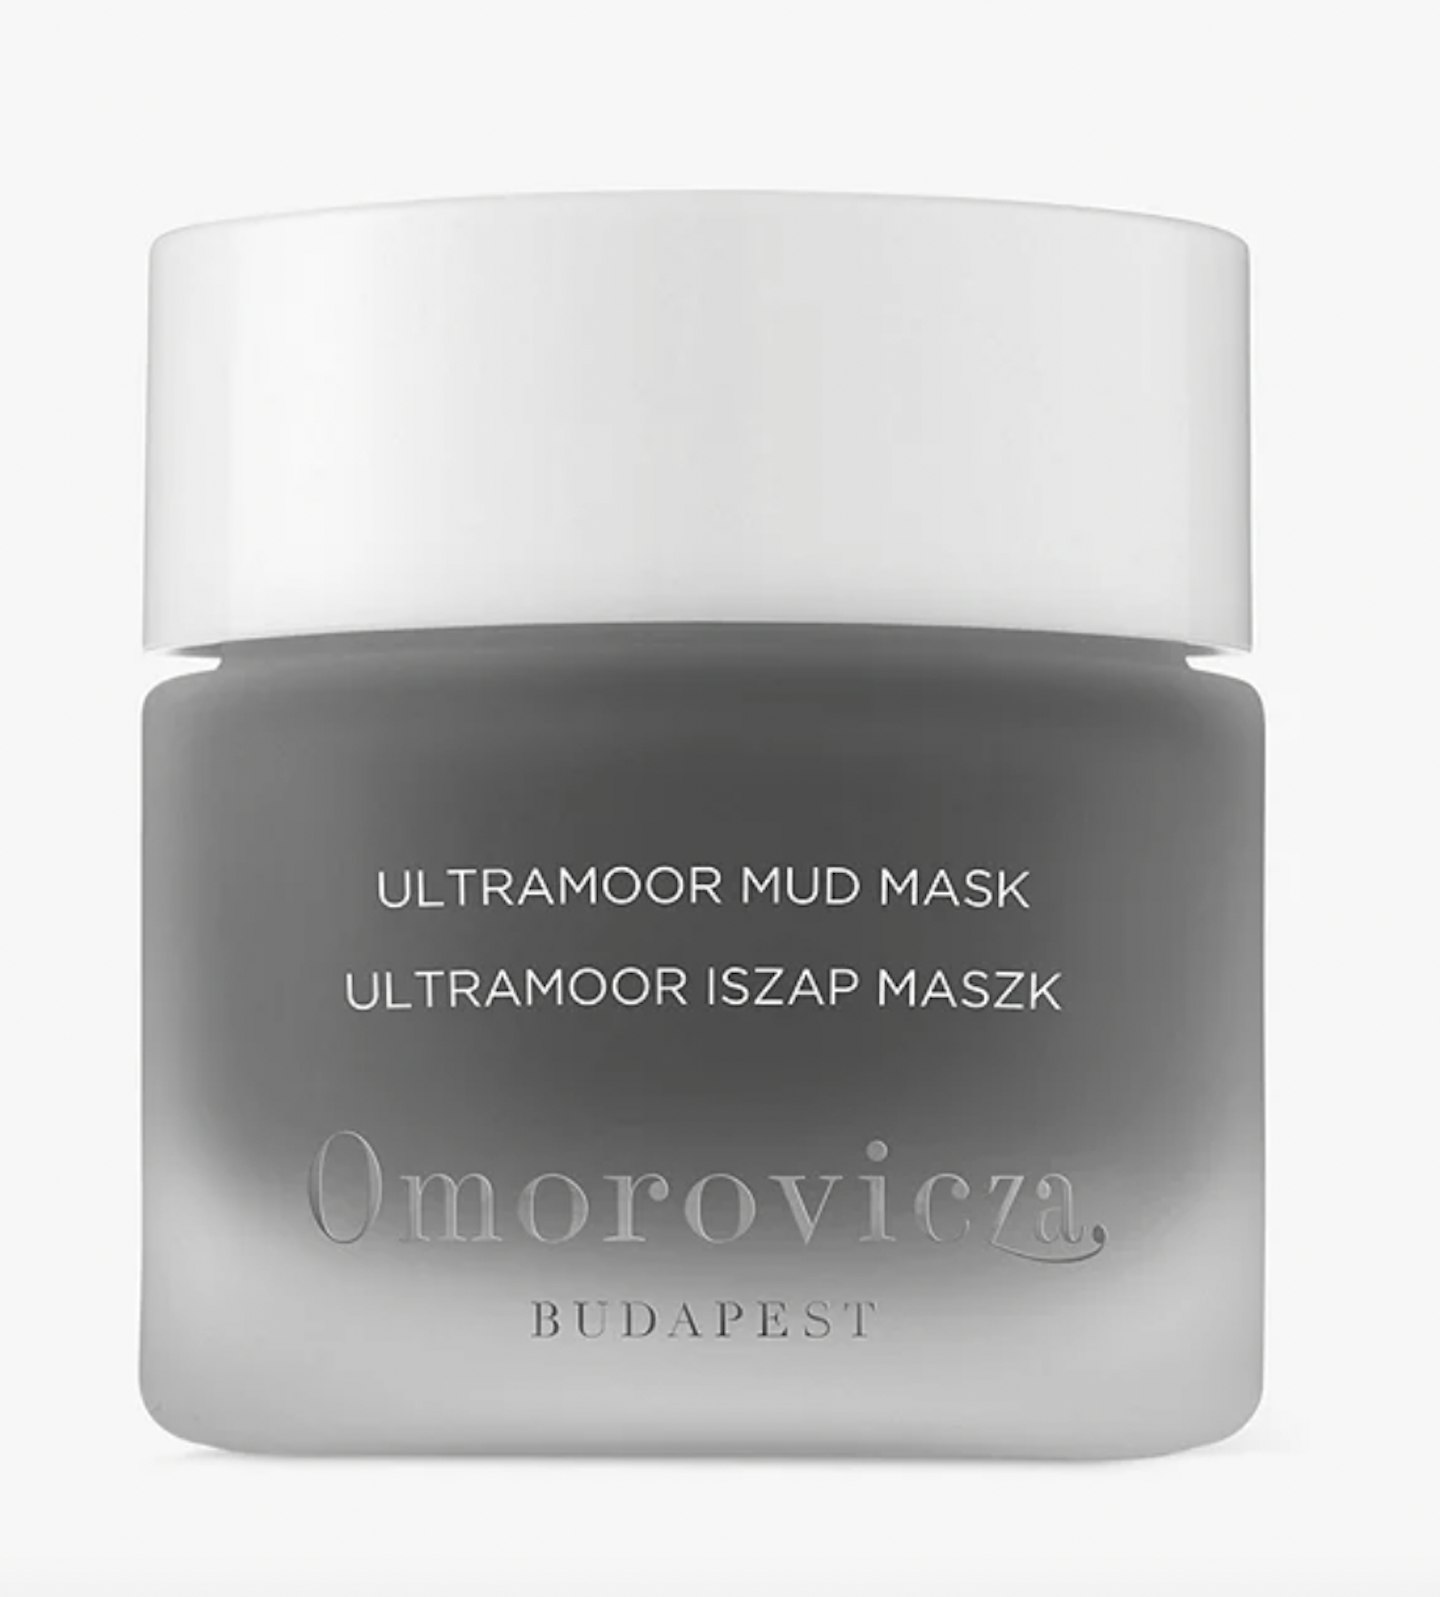 Omorovicza Ultramoor Mud Mask, £72